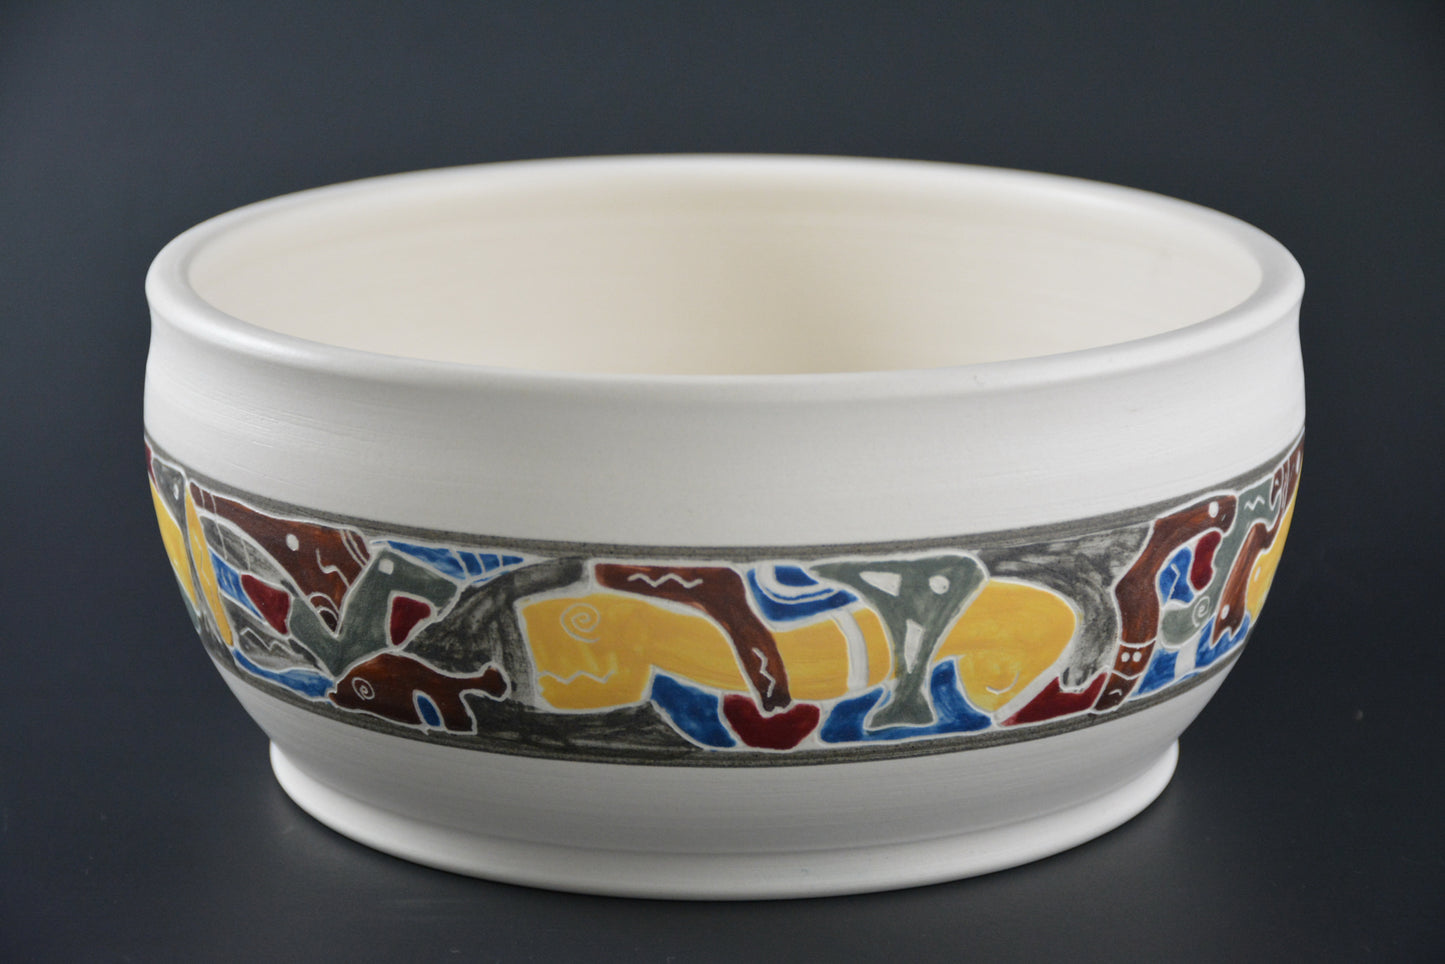 BL-29 Decorative Ceramic Candy Box - Bonbonnière de porcelaine